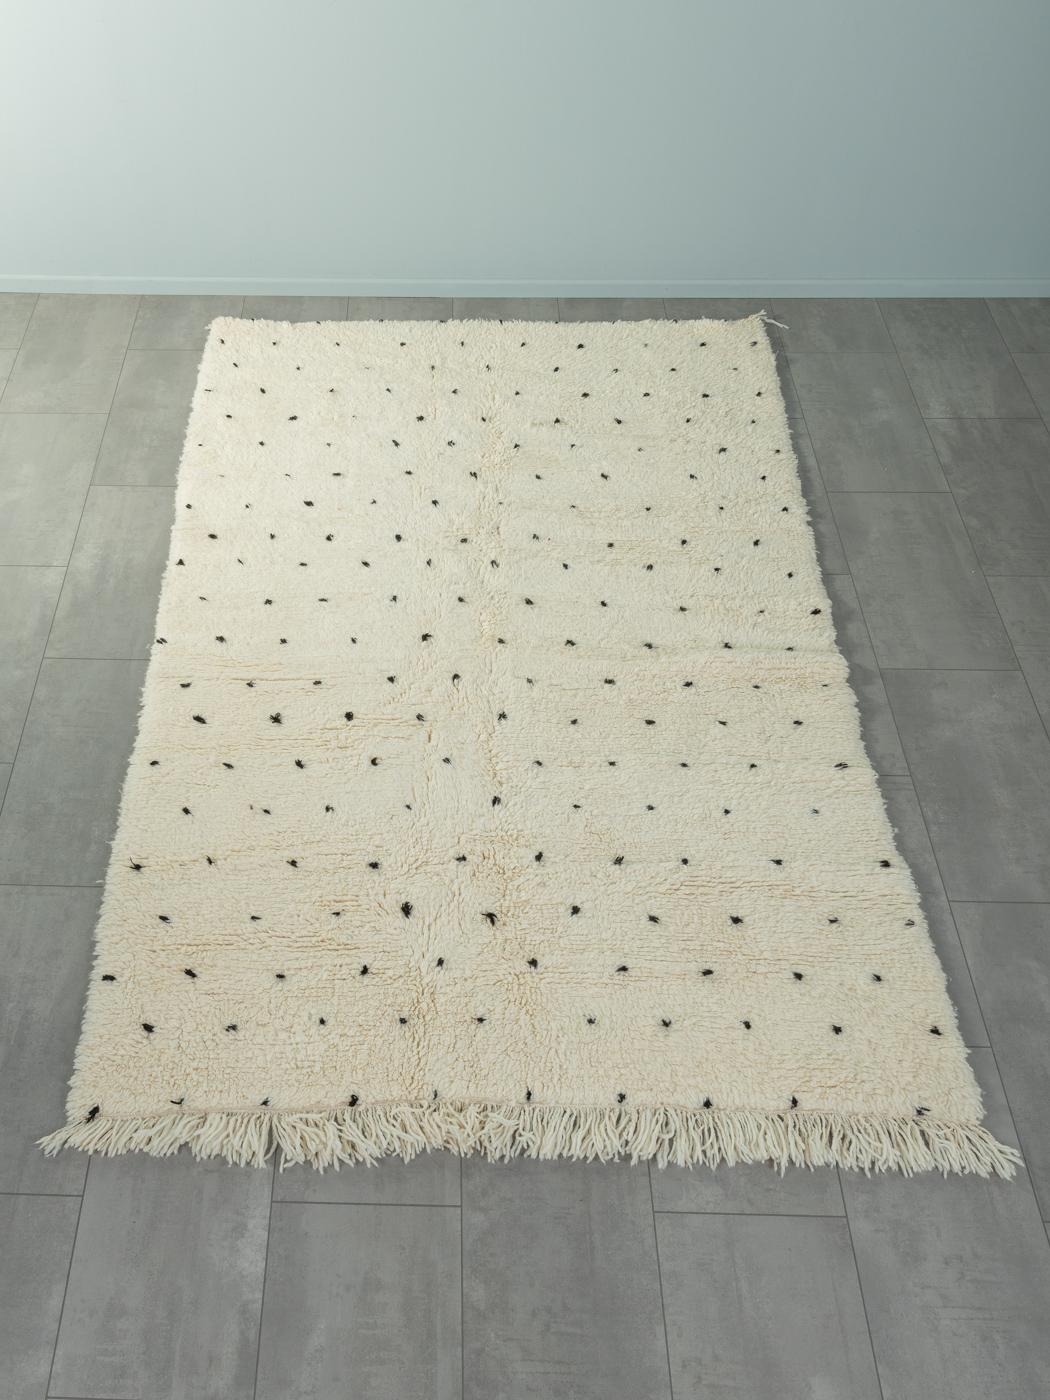 Dalmatian II est un tapis contemporain 100% laine - épais et doux, confortable sous le pied. Nos tapis berbères sont tissés et noués à la main par des femmes amazighes dans les montagnes de l'Atlas. Ces communautés fabriquent des tapis depuis des